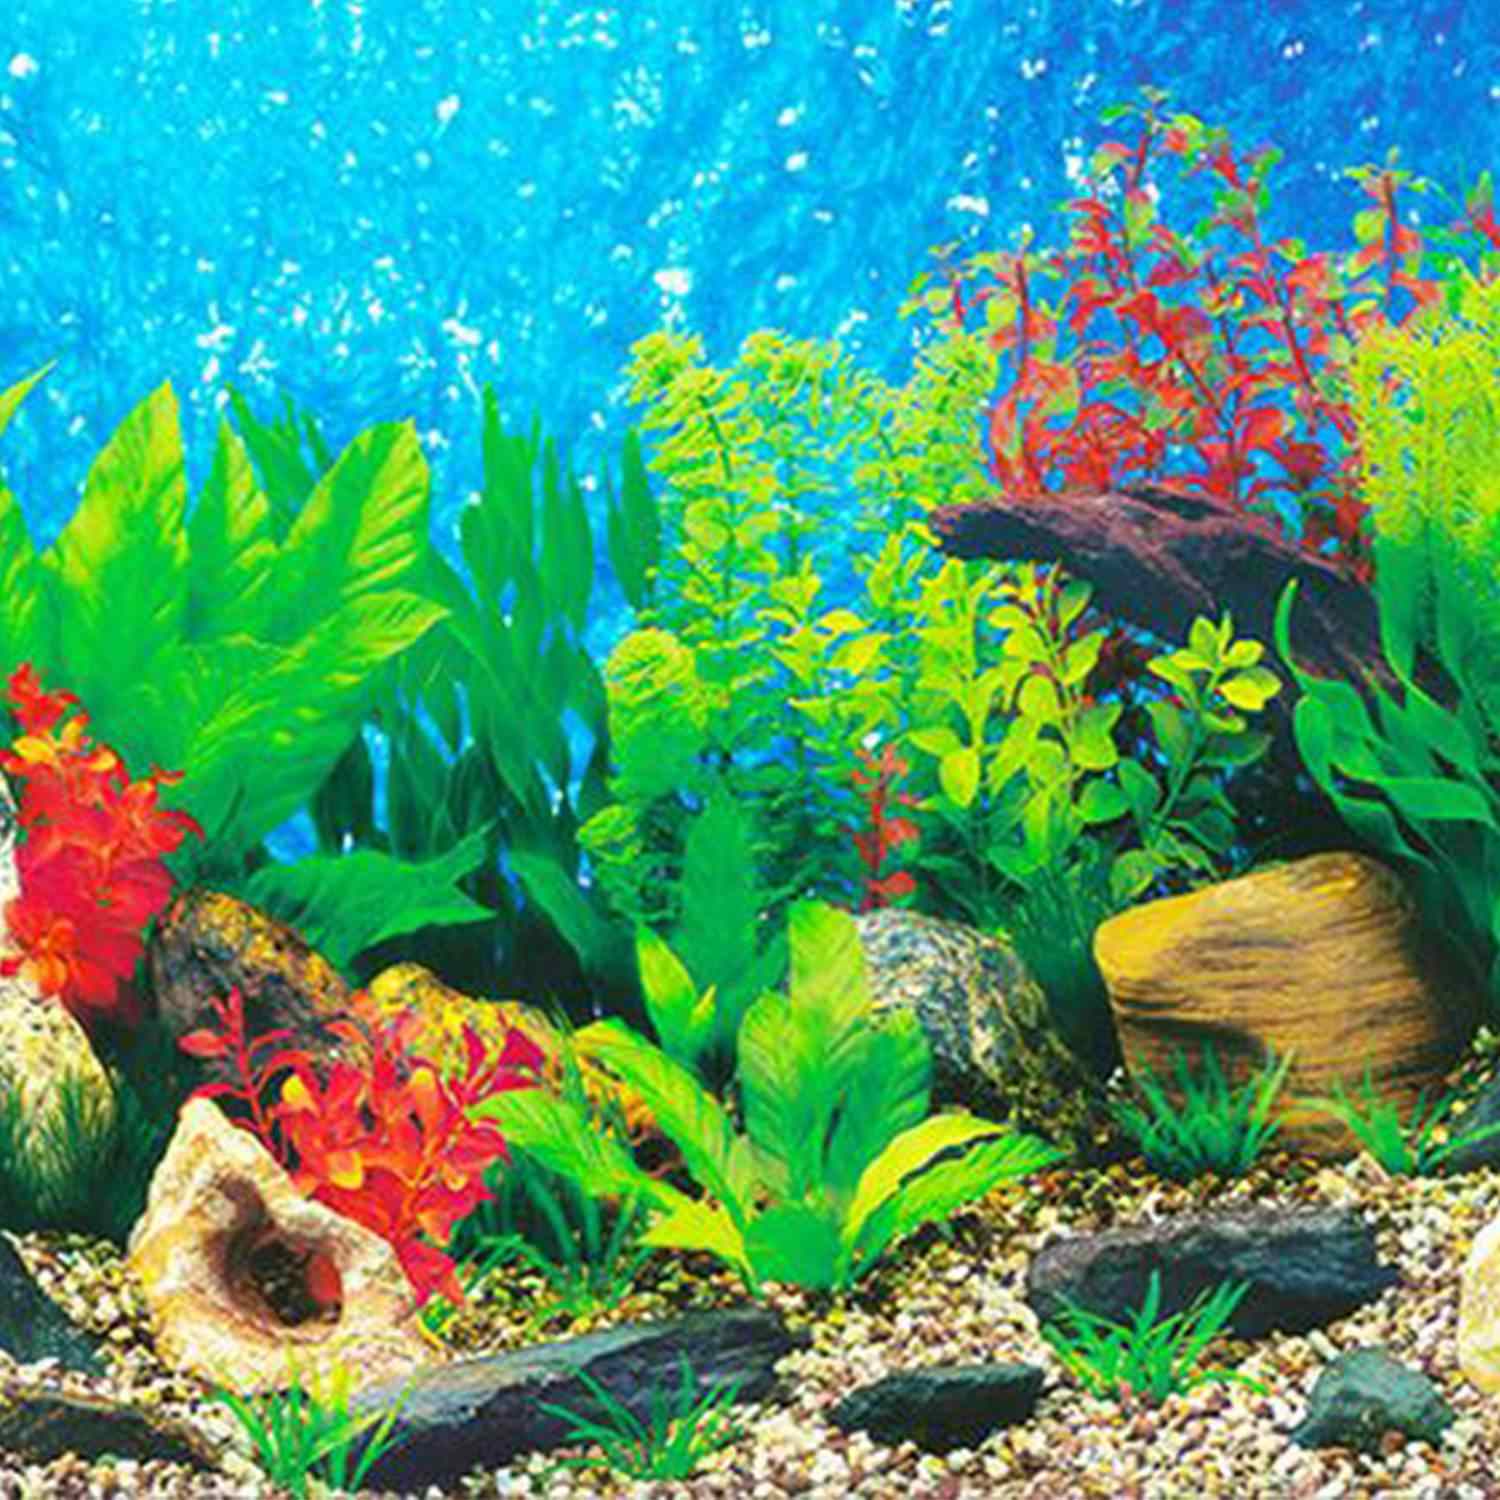 acquario hd wallpaper,acquario d'acqua dolce,subacqueo,acquario,biologia marina,pesce